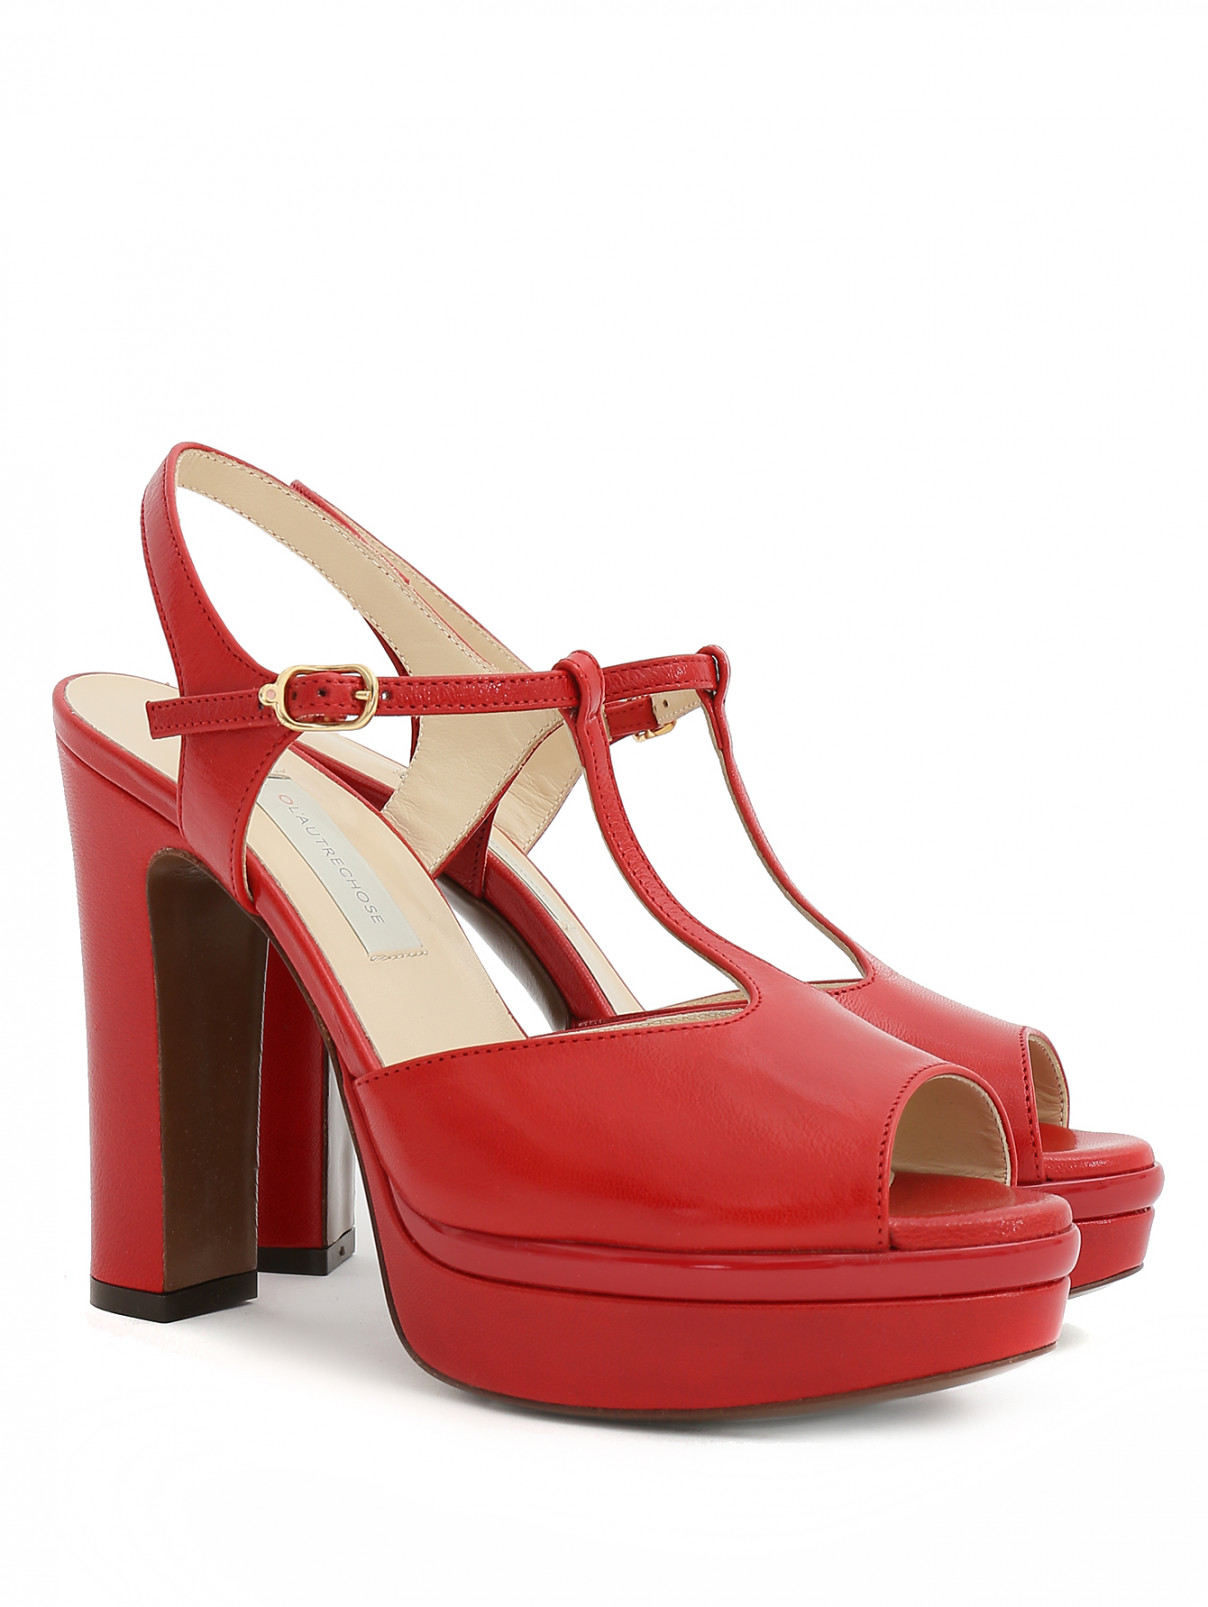 Босоножки из кожи на платформе и устойчивом каблуке L'Autre Chose  –  Общий вид  – Цвет:  Красный